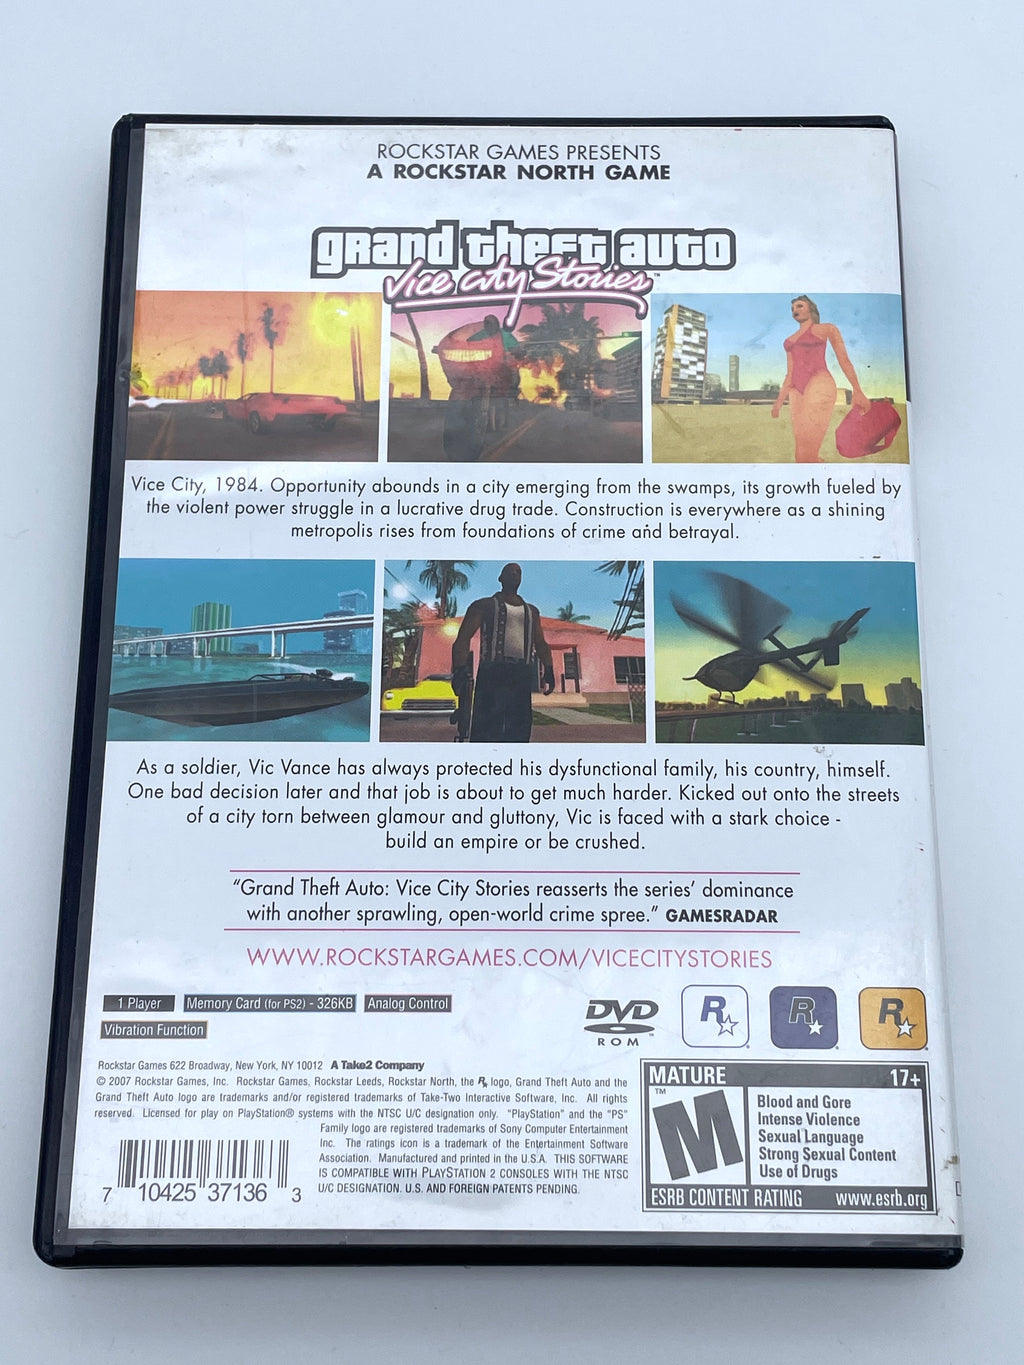 Grand Theft Auto: Vice City, Sony PlayStation 2